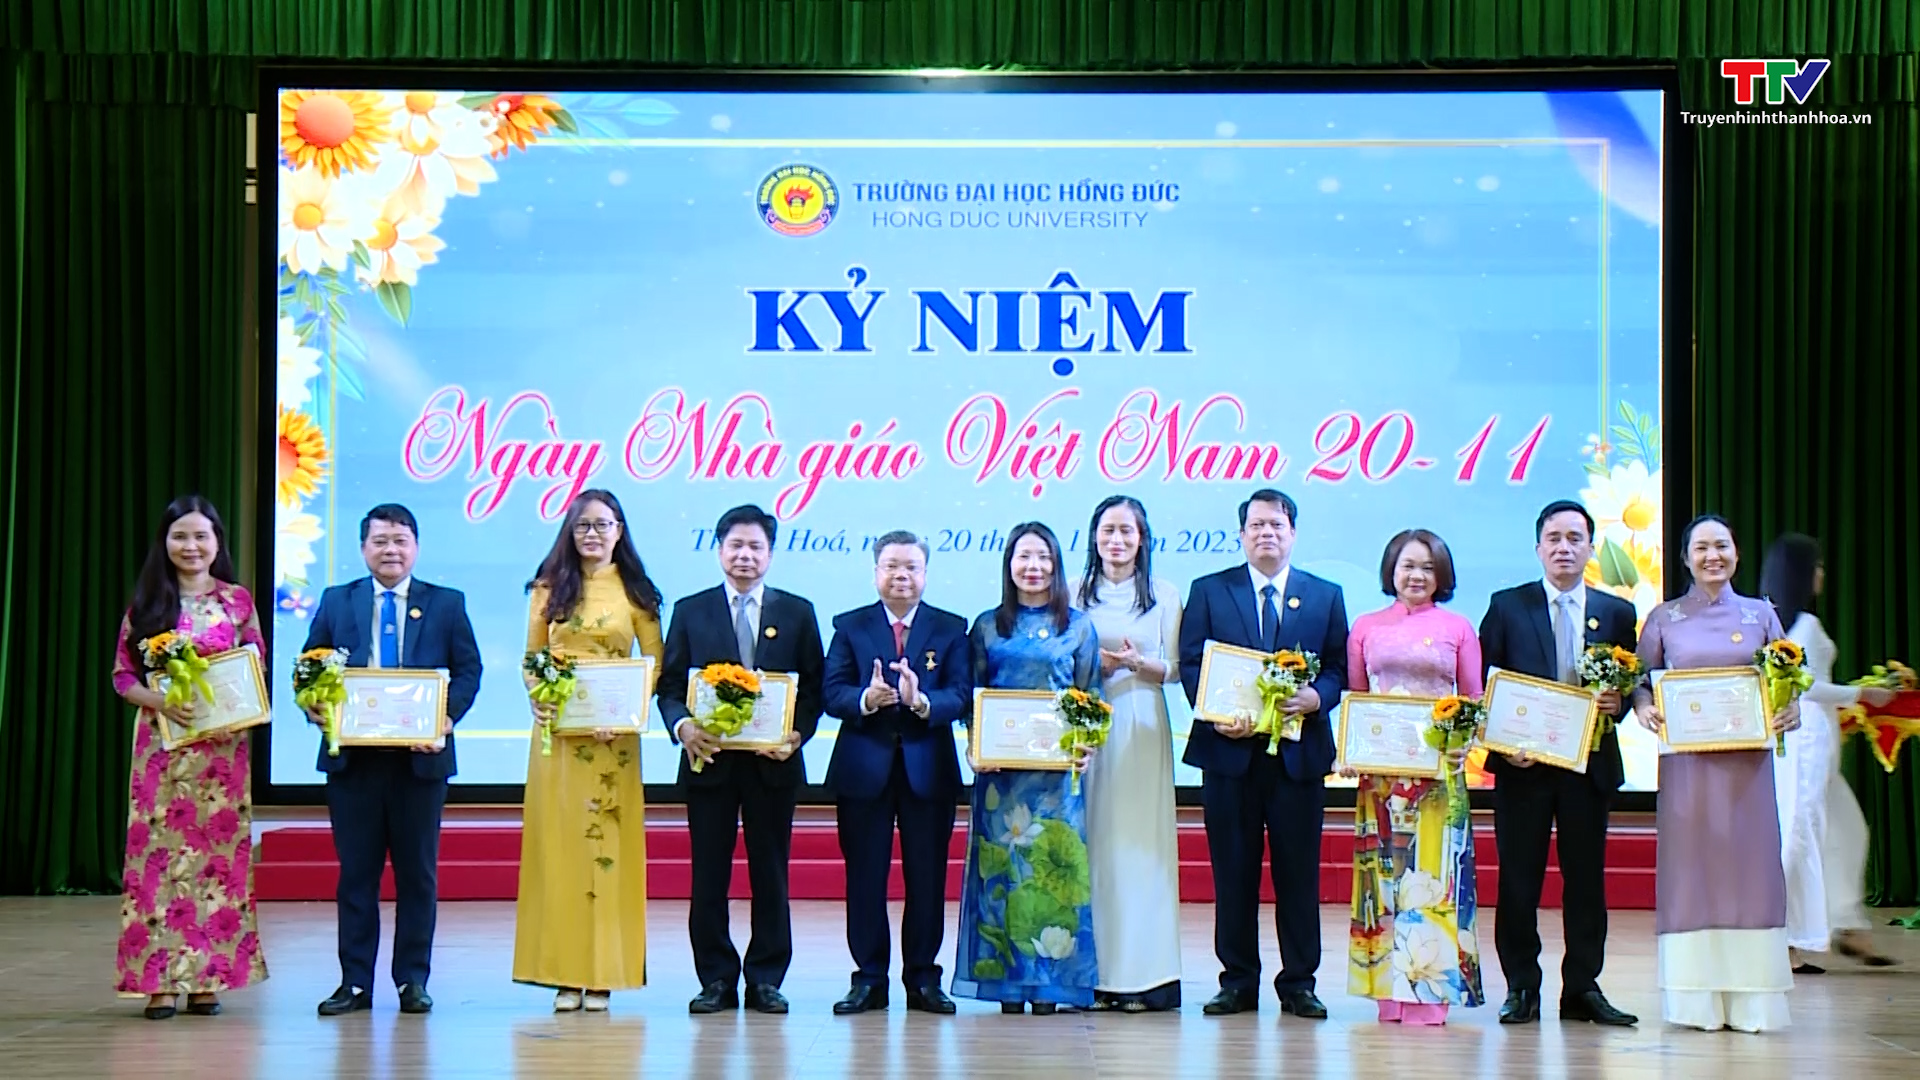 Trường Đại học Hồng Đức tổ chức kỷ niệm Ngày Nhà giáo Việt Nam- Ảnh 1.